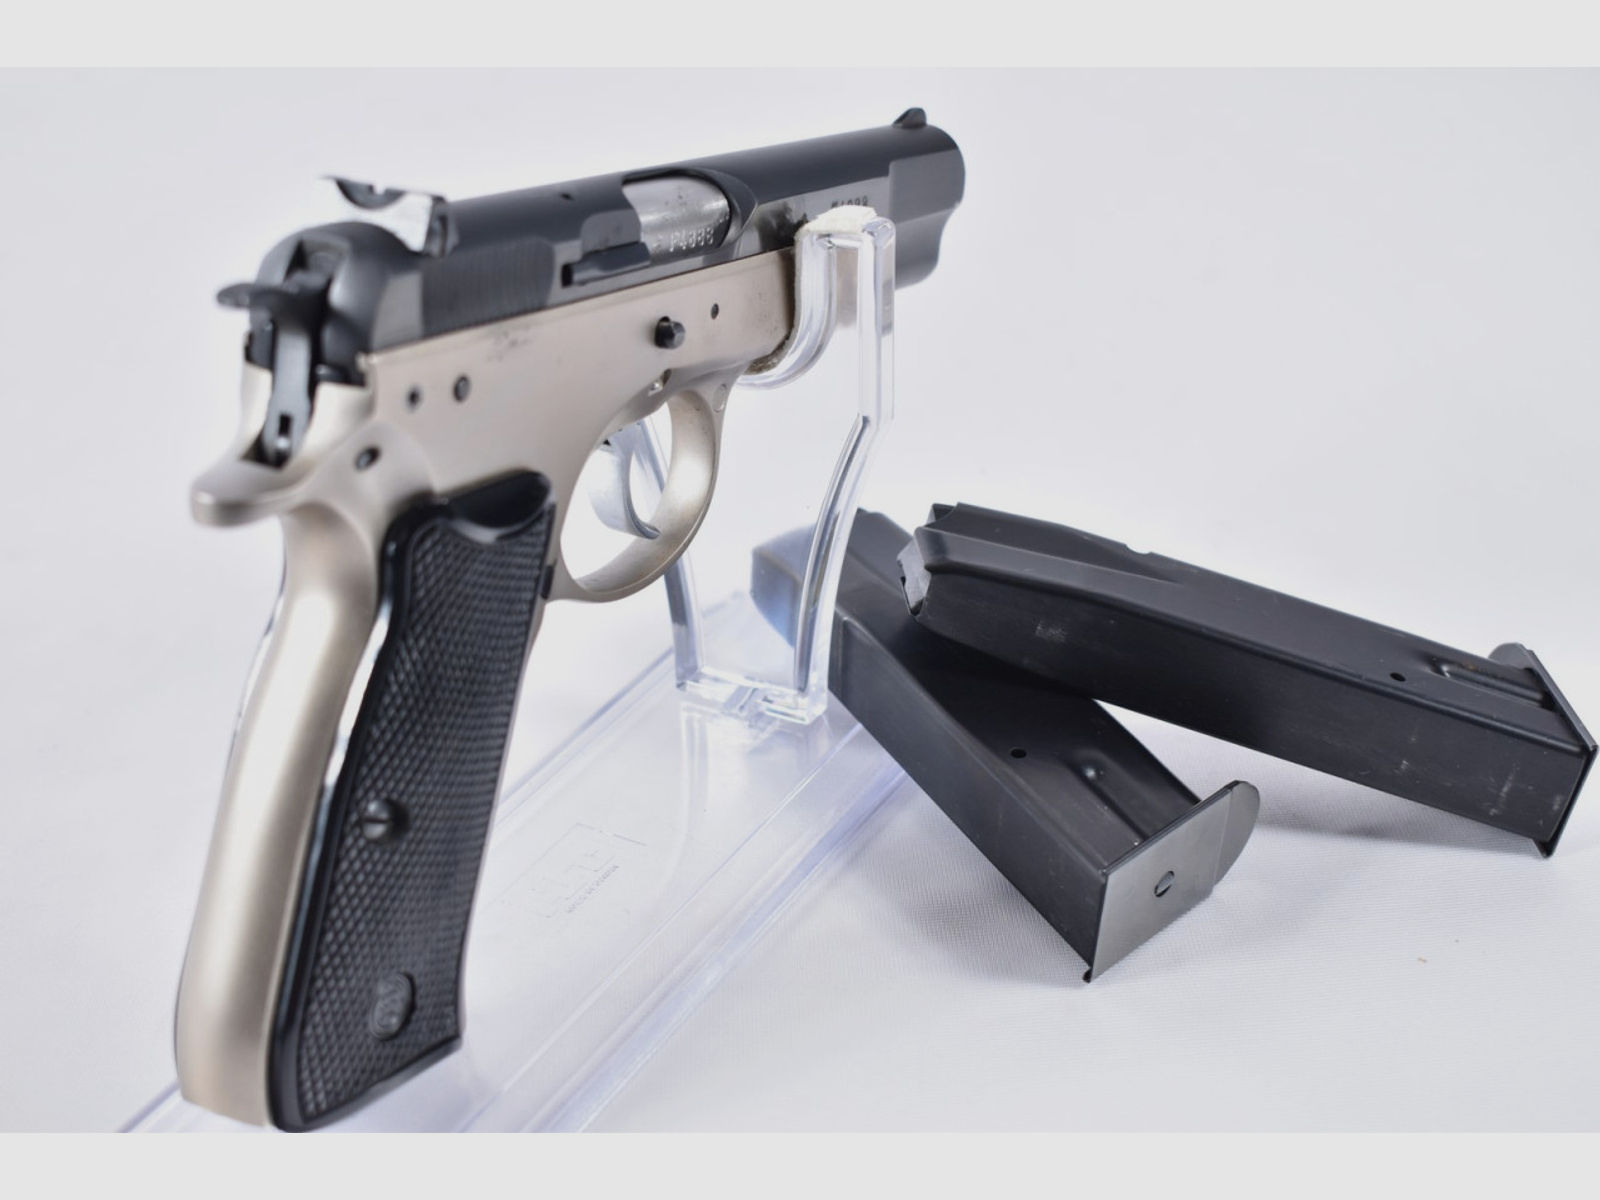 CZ M75 9mmLuger Pistole